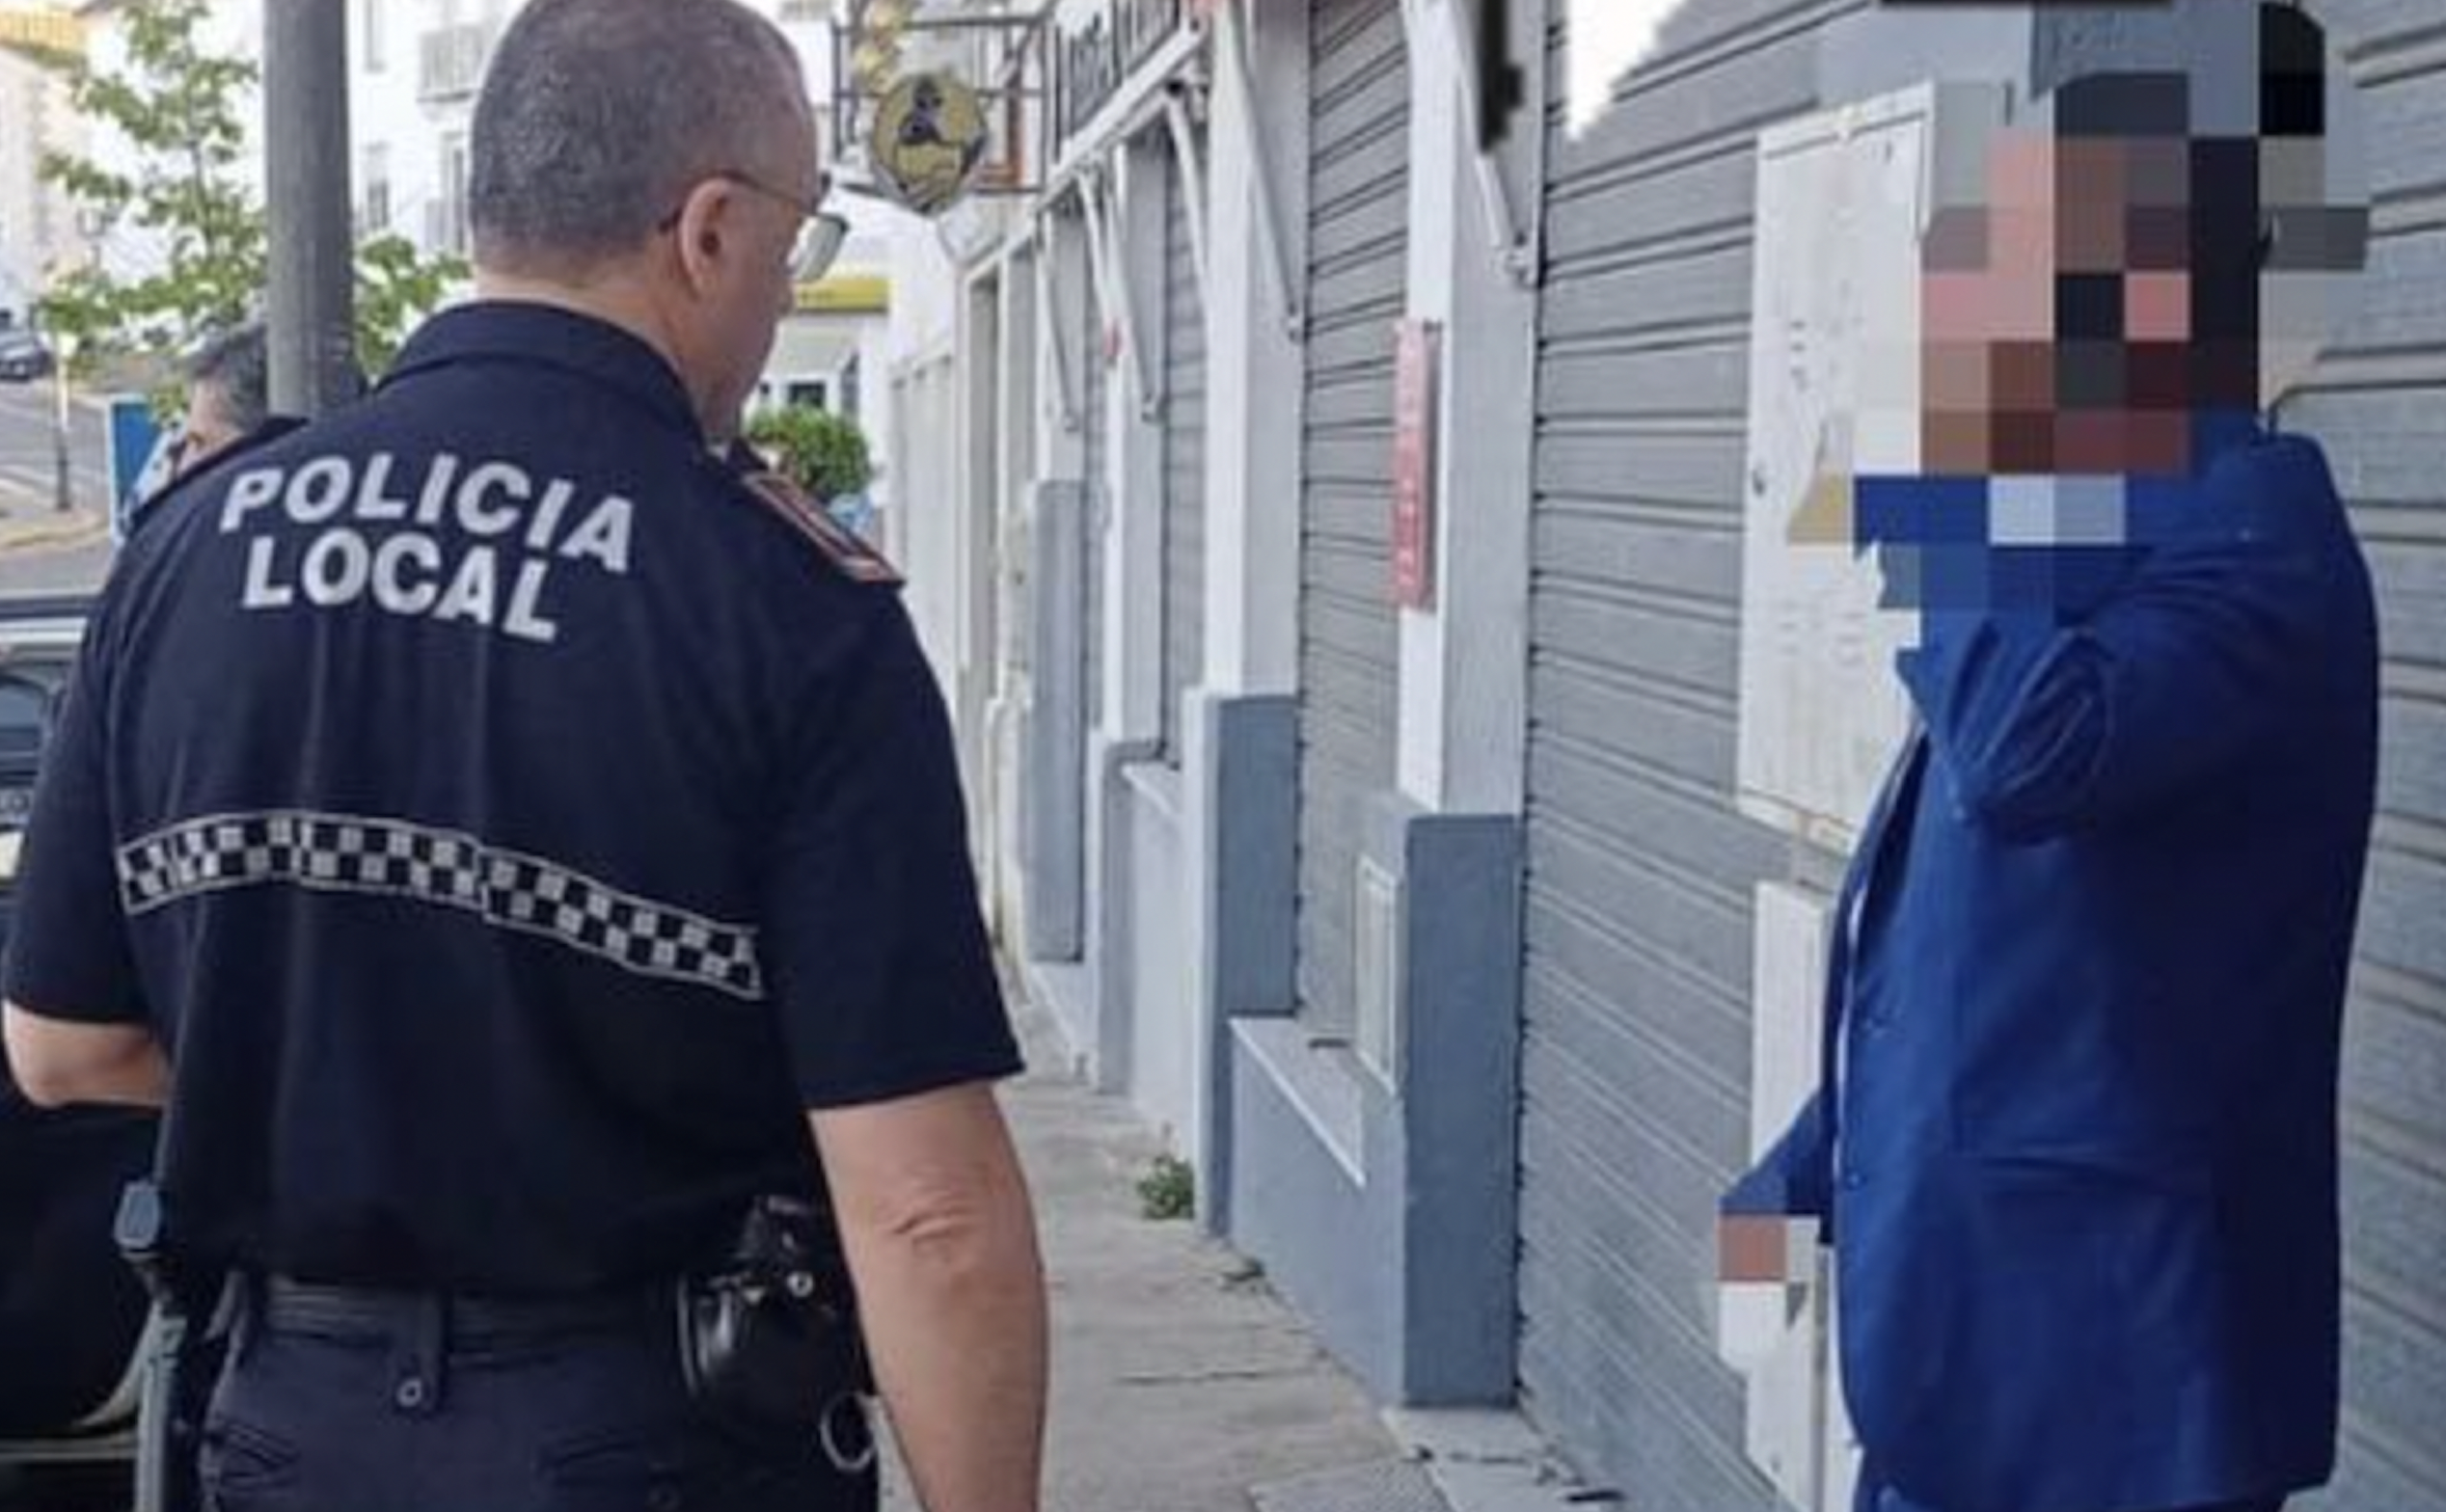 La Policía Local de Medina Sidonia detiene a una persona ebria que estaba molestando en una plaza.